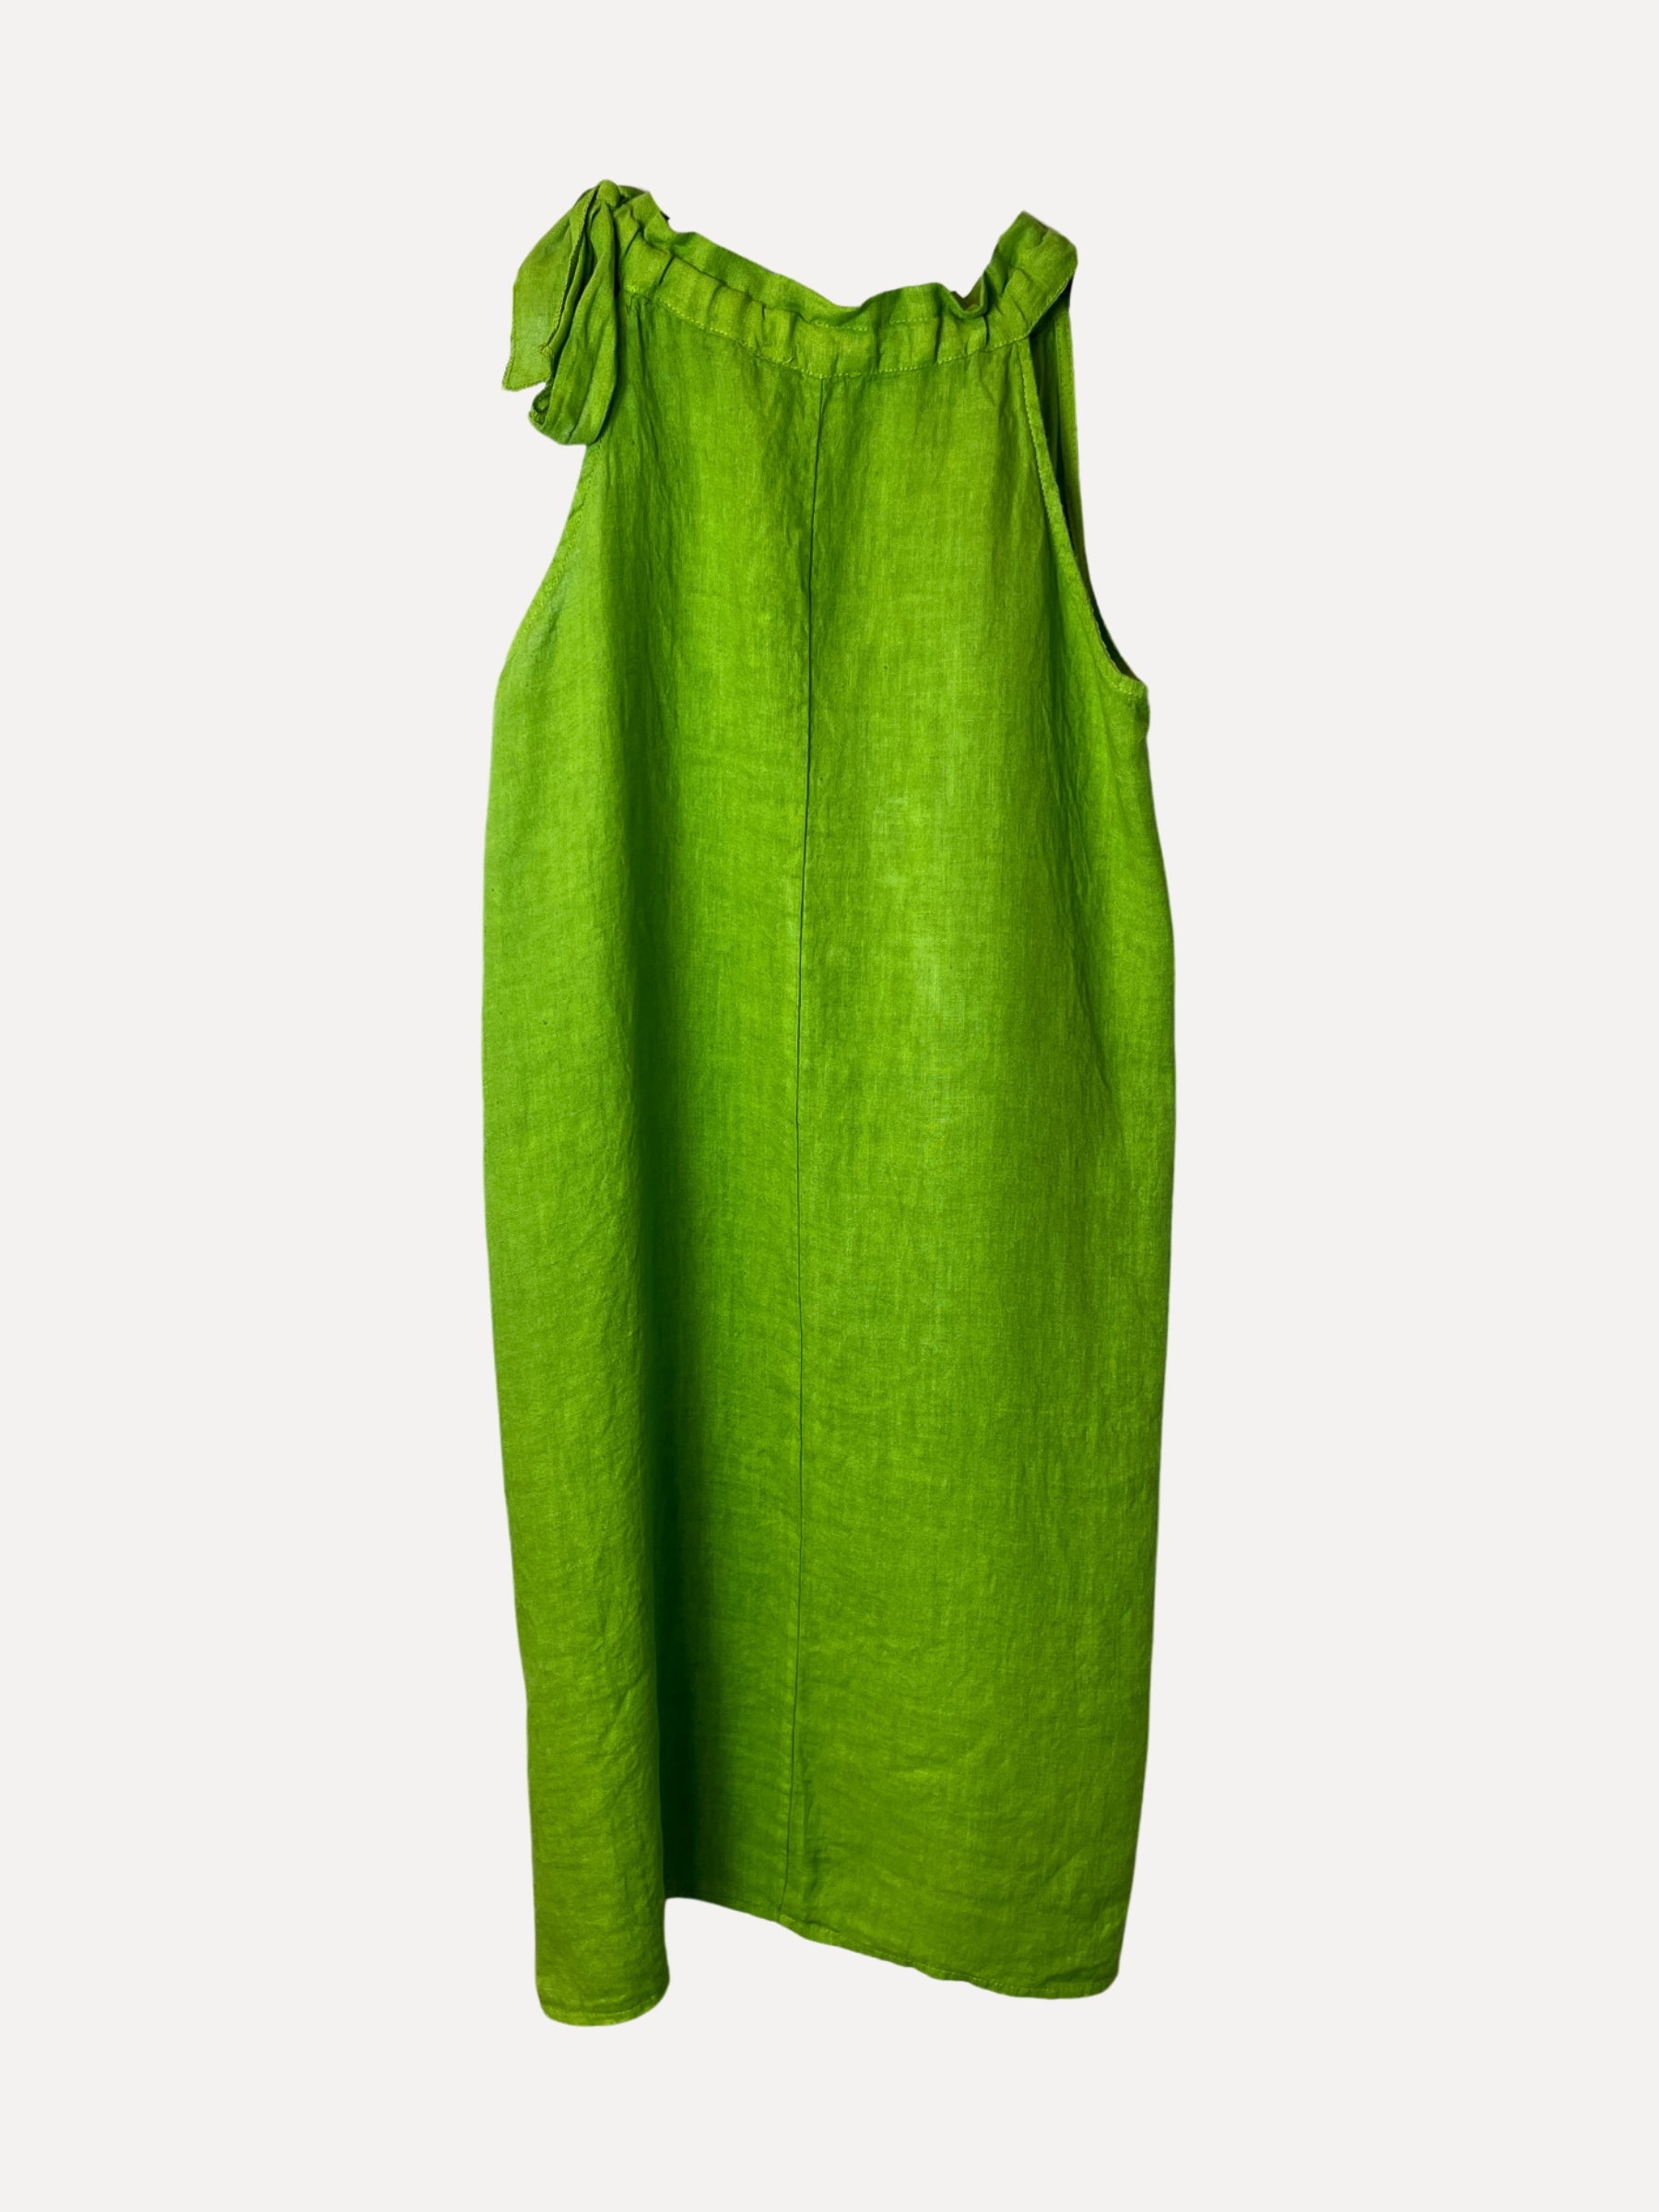 Macy Leinenkleid, Frühlingsgrün